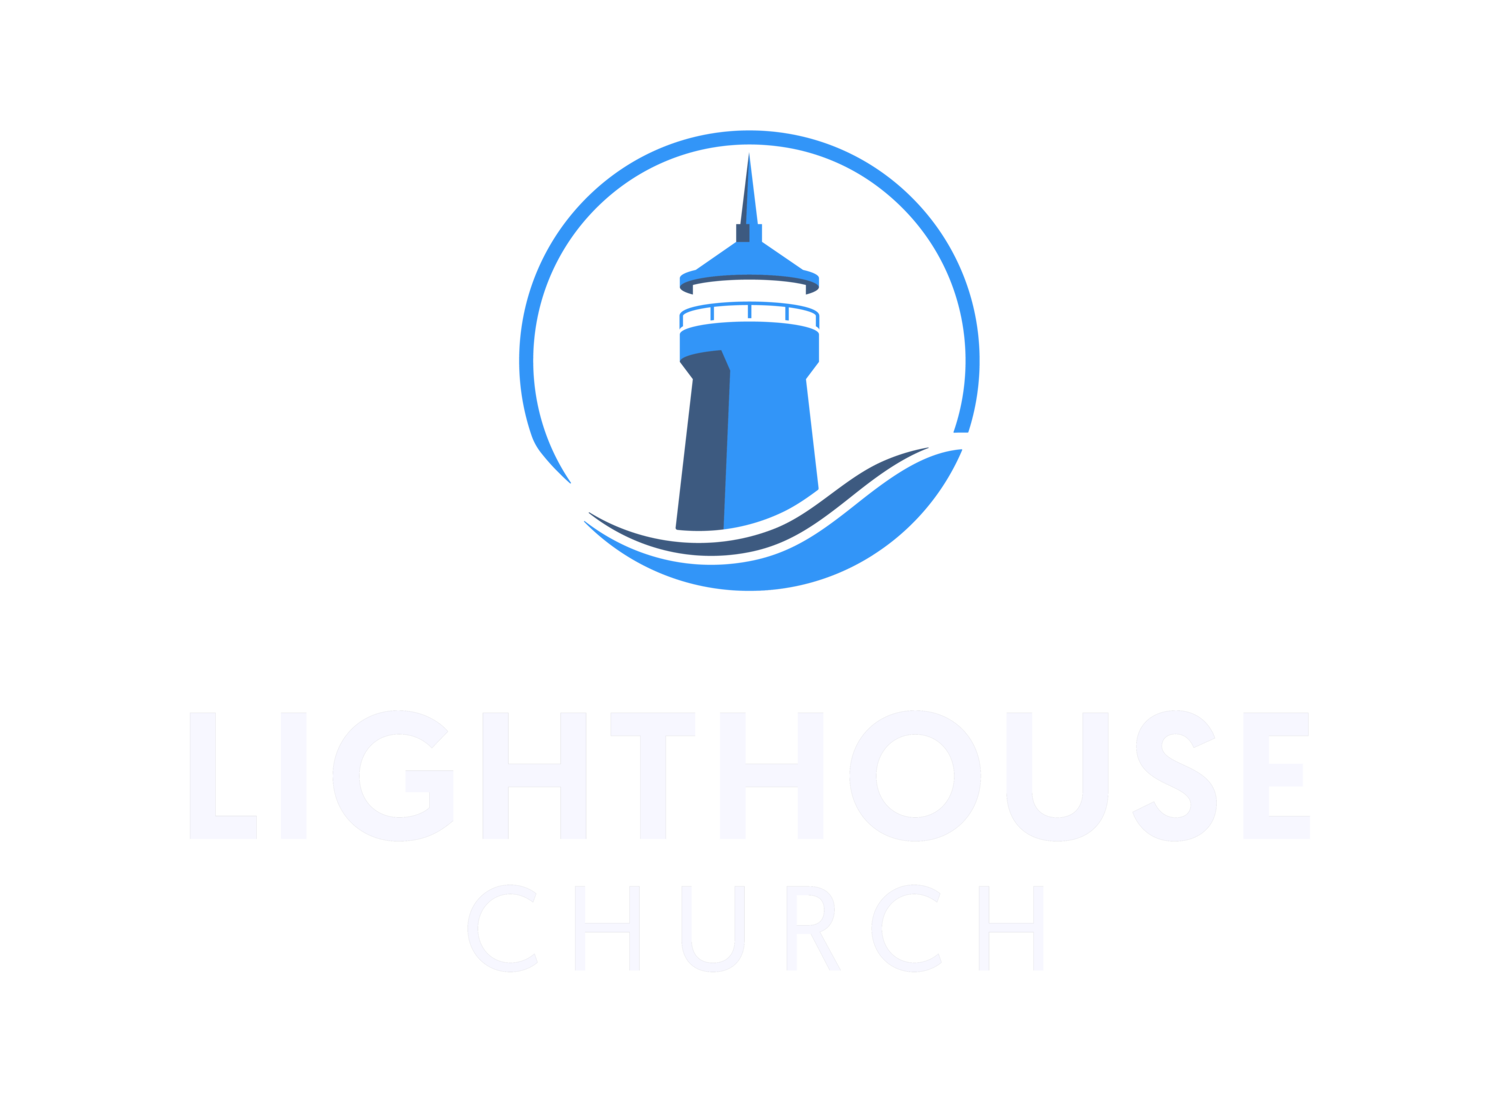 Lighthouse Church